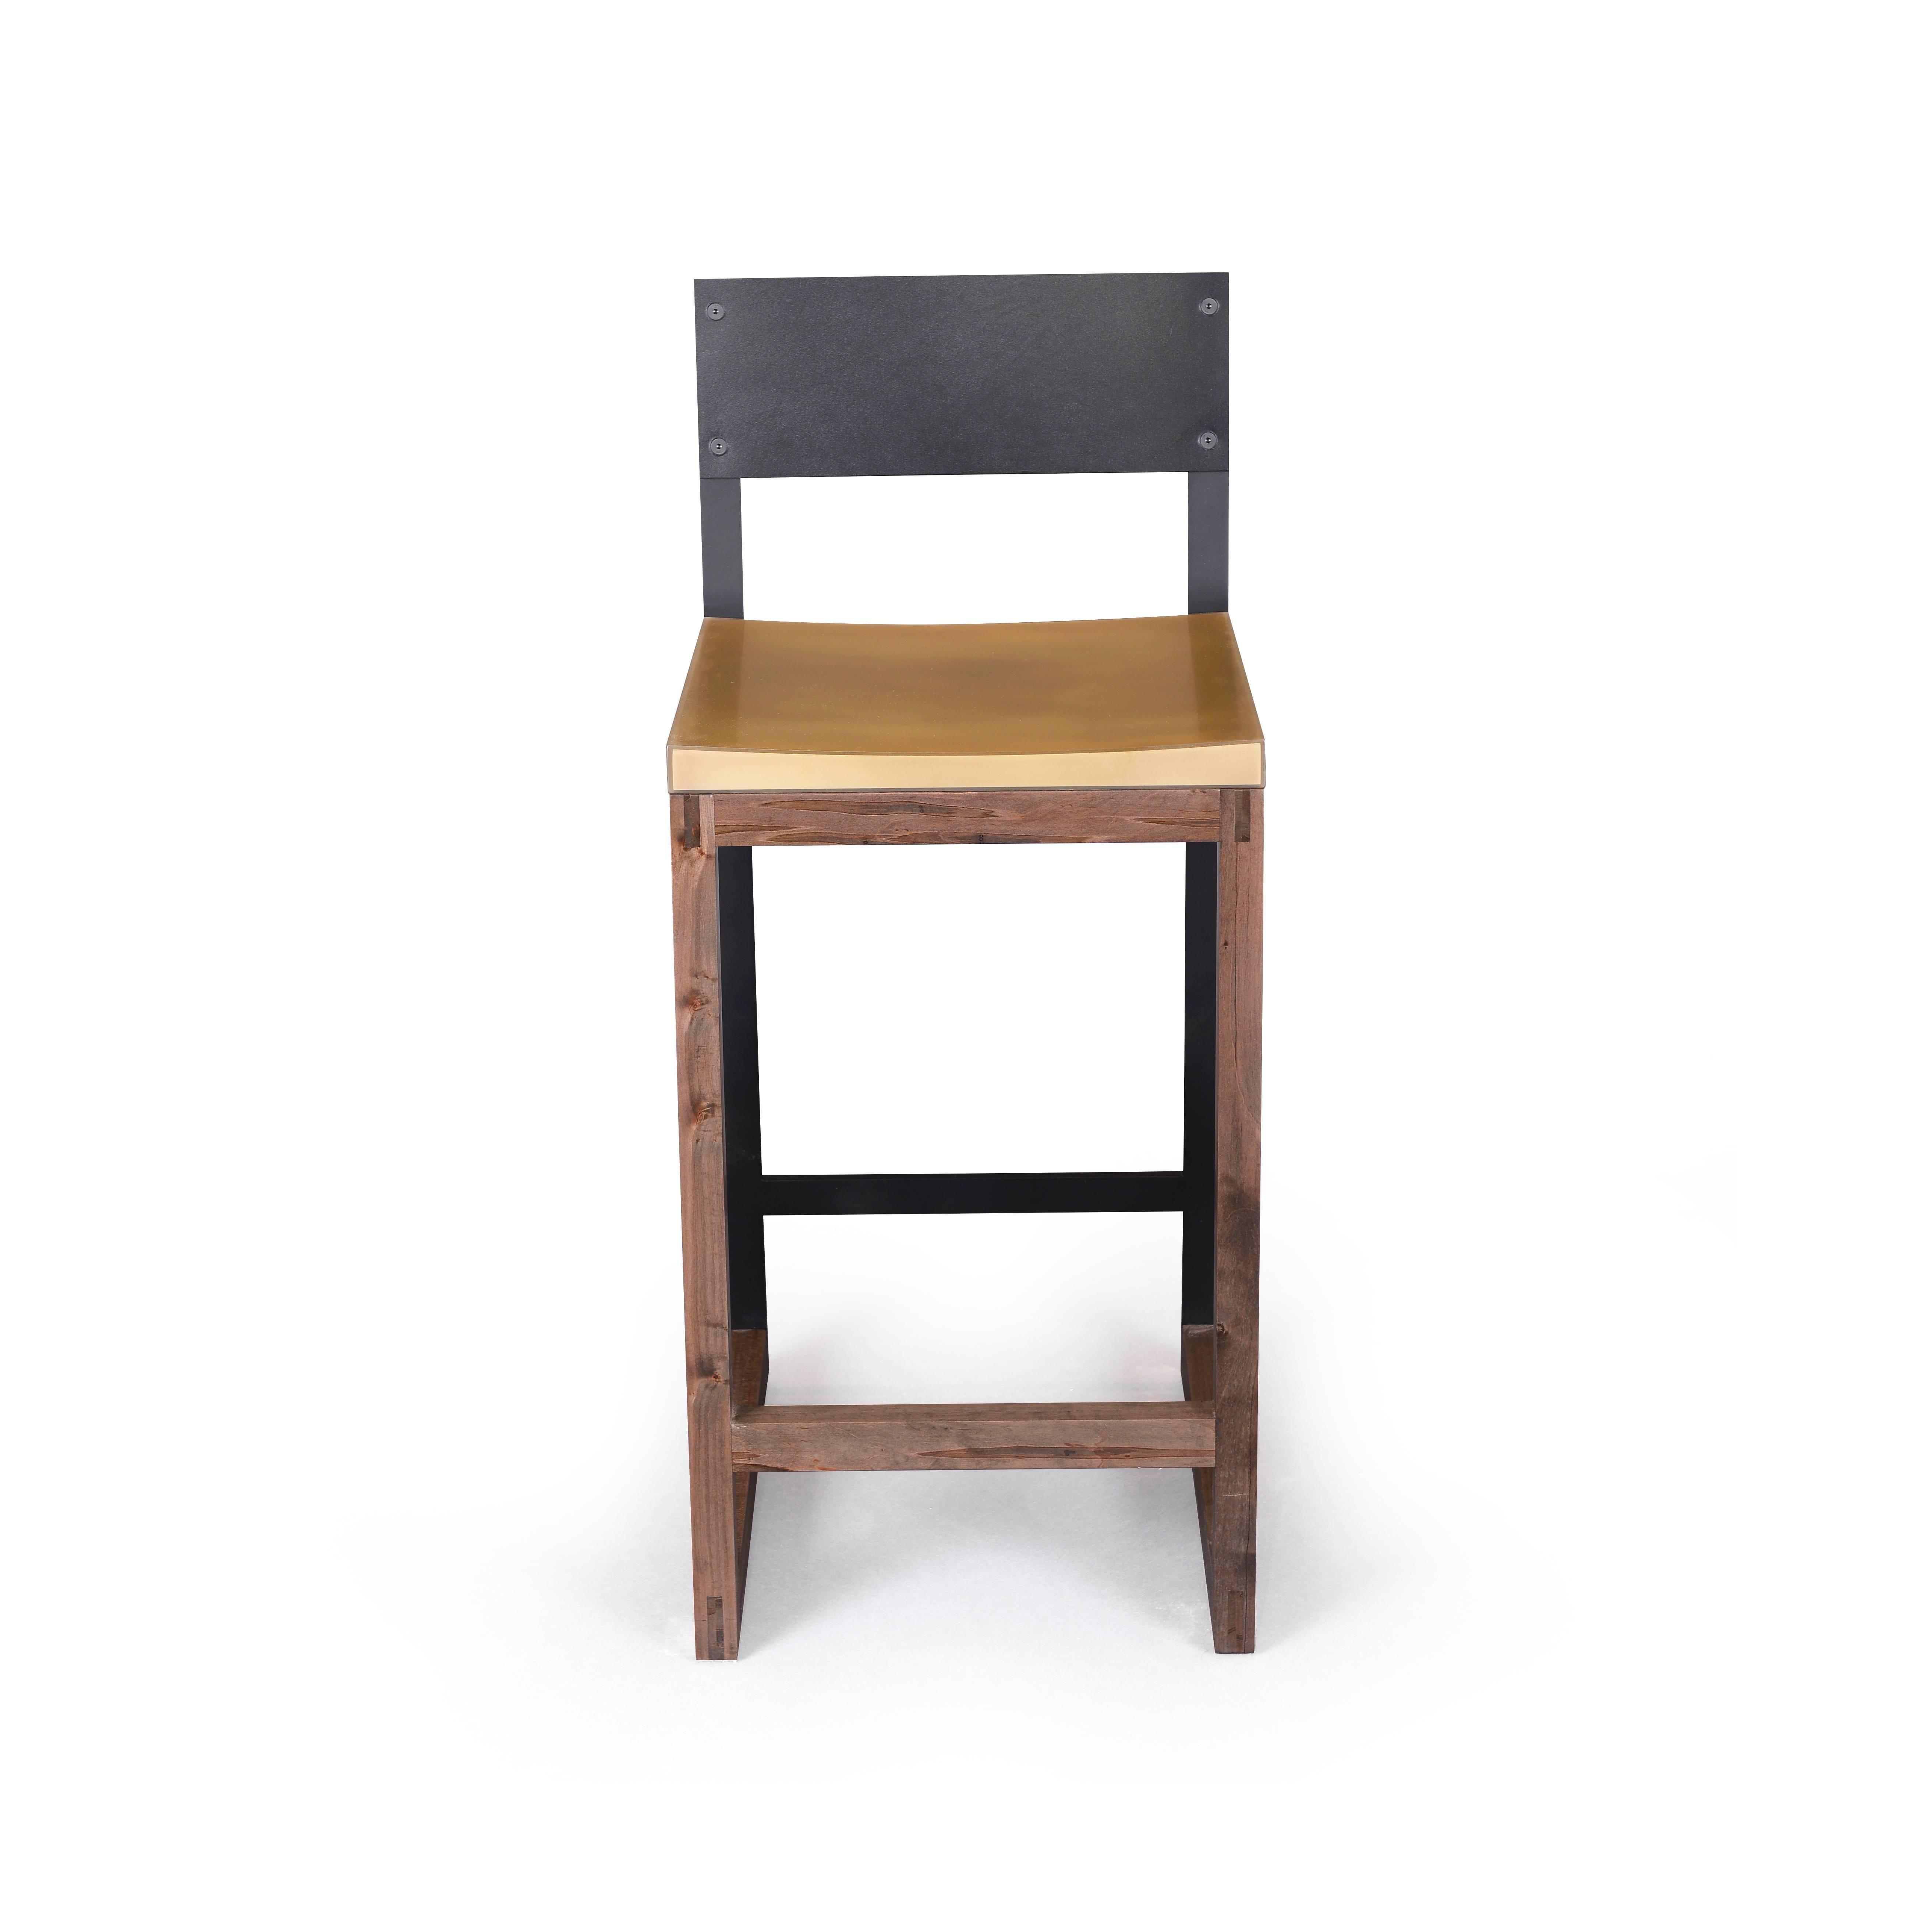 Le design épuré du tabouret gotham présente un siège en résine époxy de couleur bronze, un dossier en cuir souple noir laminé et une base en érable ambrosia oxydé. La résine est extrêmement lisse et non poreuse, ce qui en fait une surface idéale